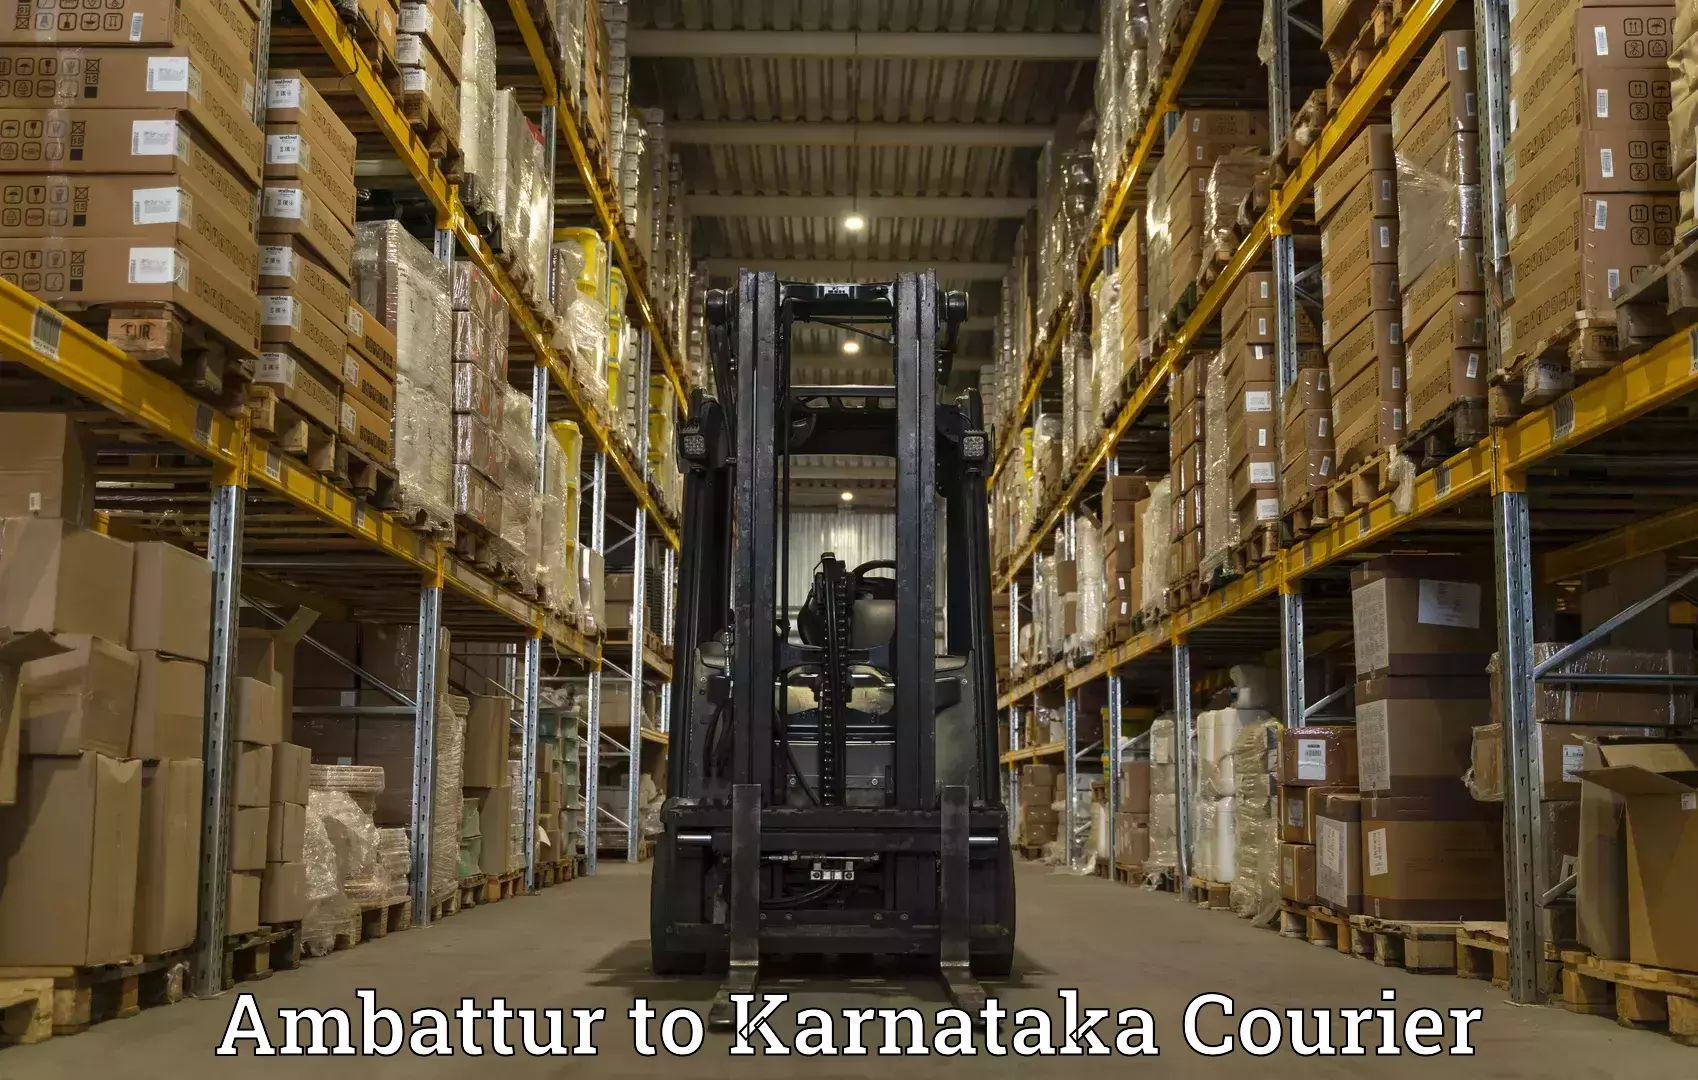 Door-to-door freight service Ambattur to Bangalore